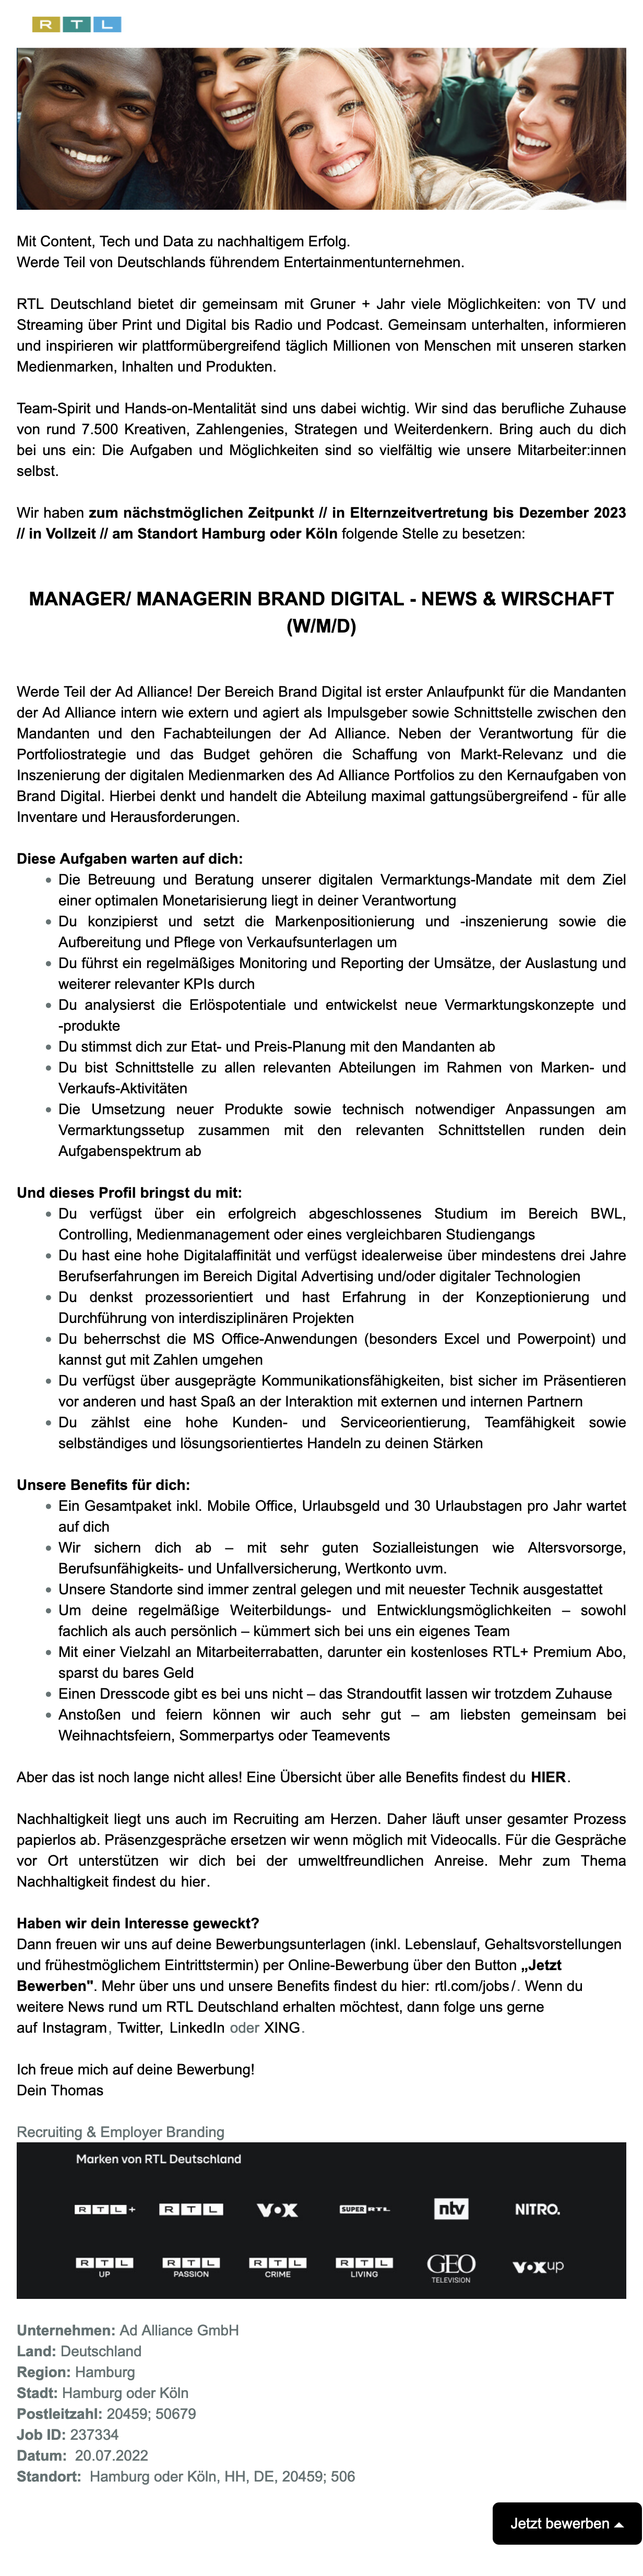 Manager Brand Digital - News & Wirtschaft (w/m/d) (Ad Alliance)